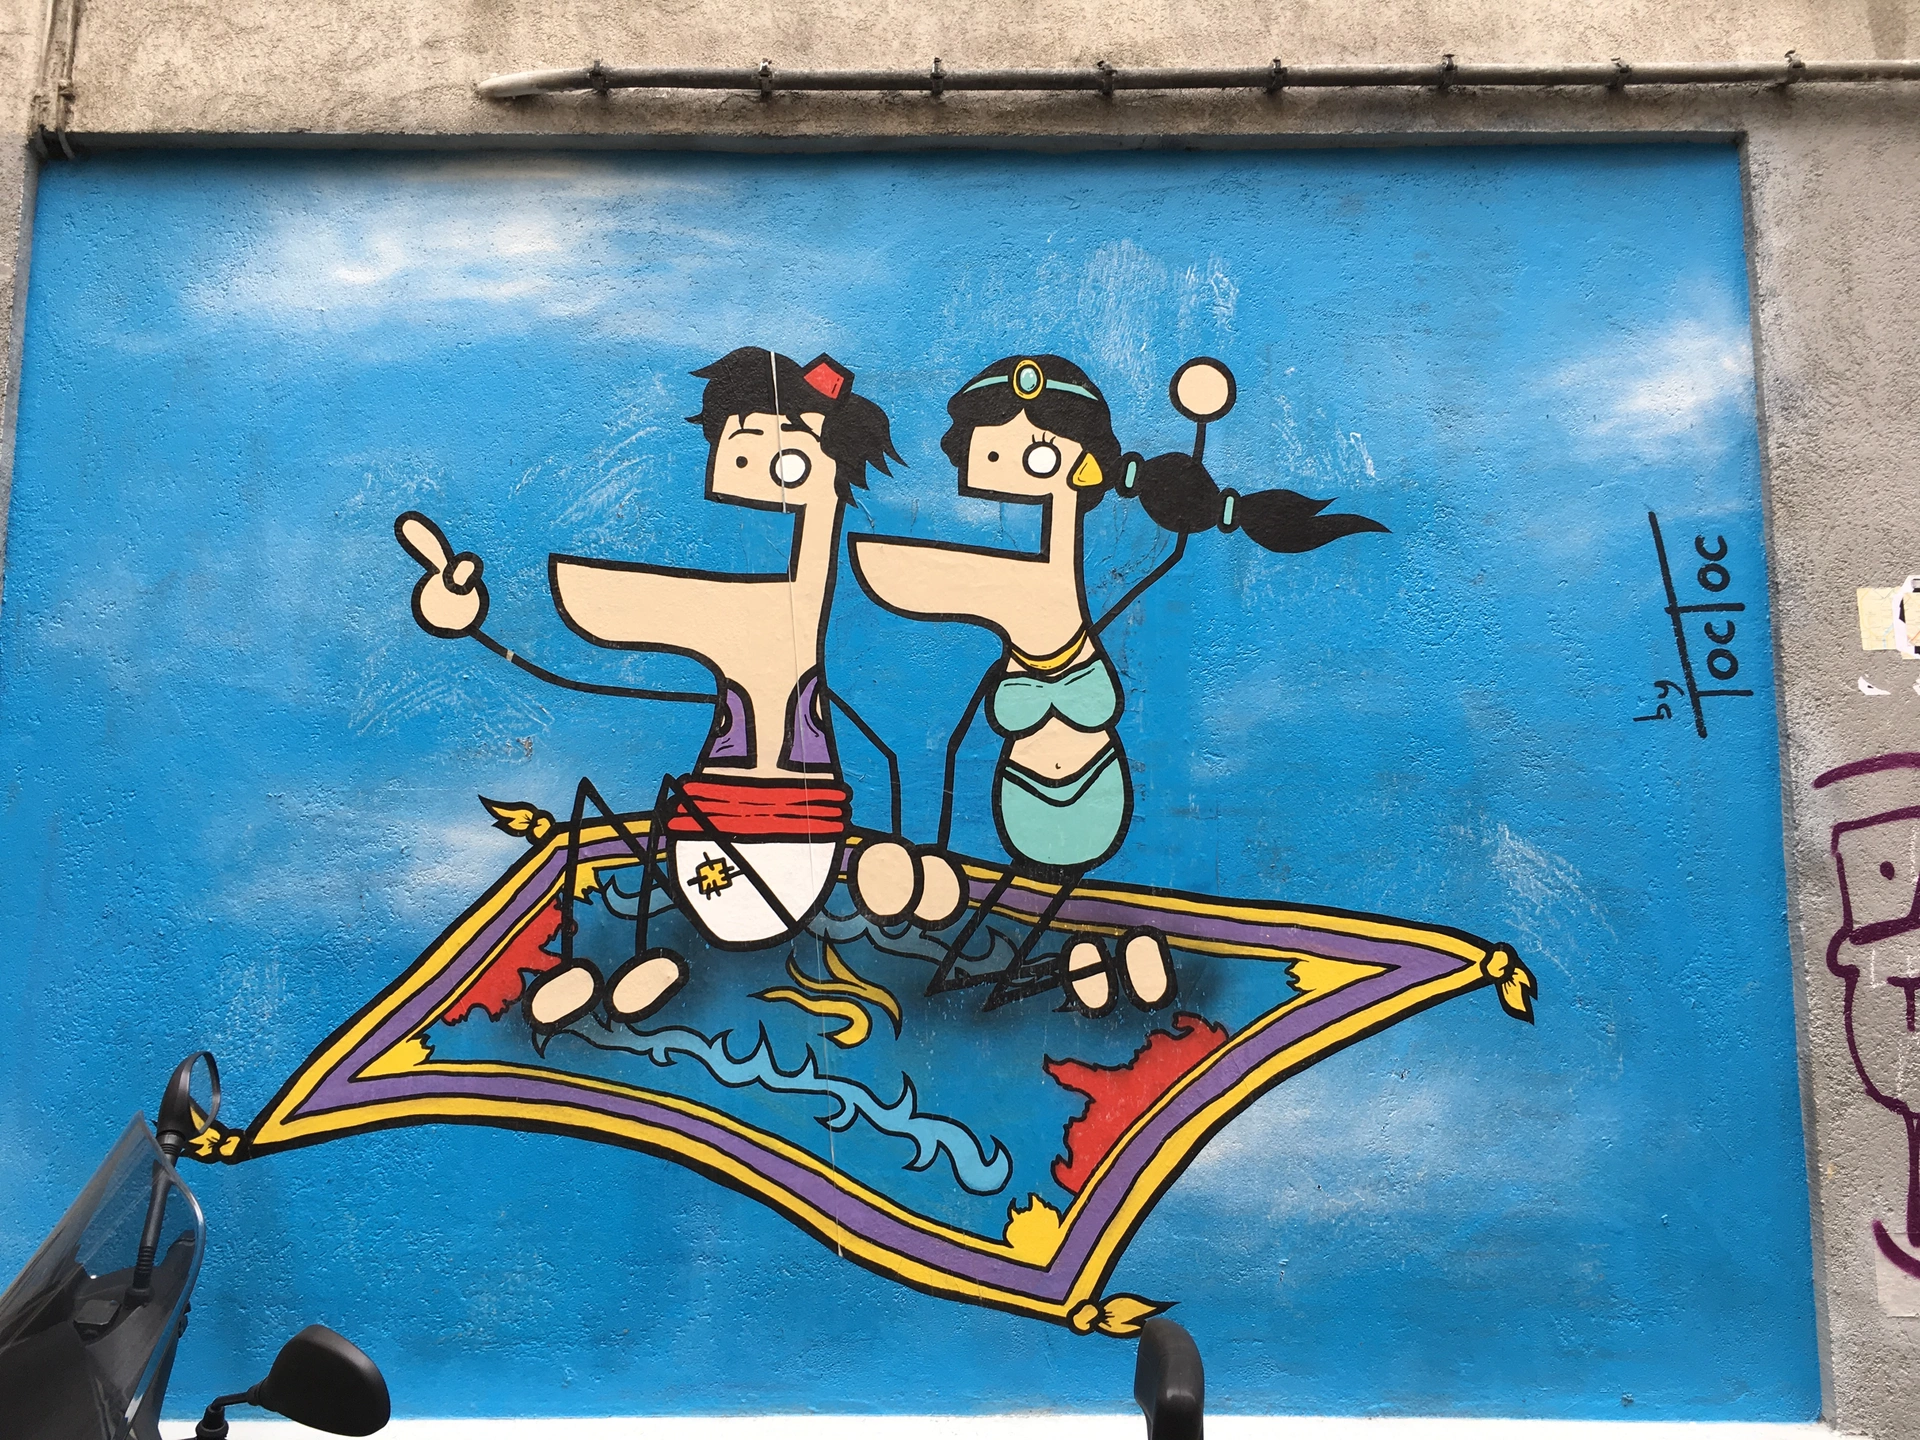 Oeuvre de Street Art réalisée par TocToc à Paris